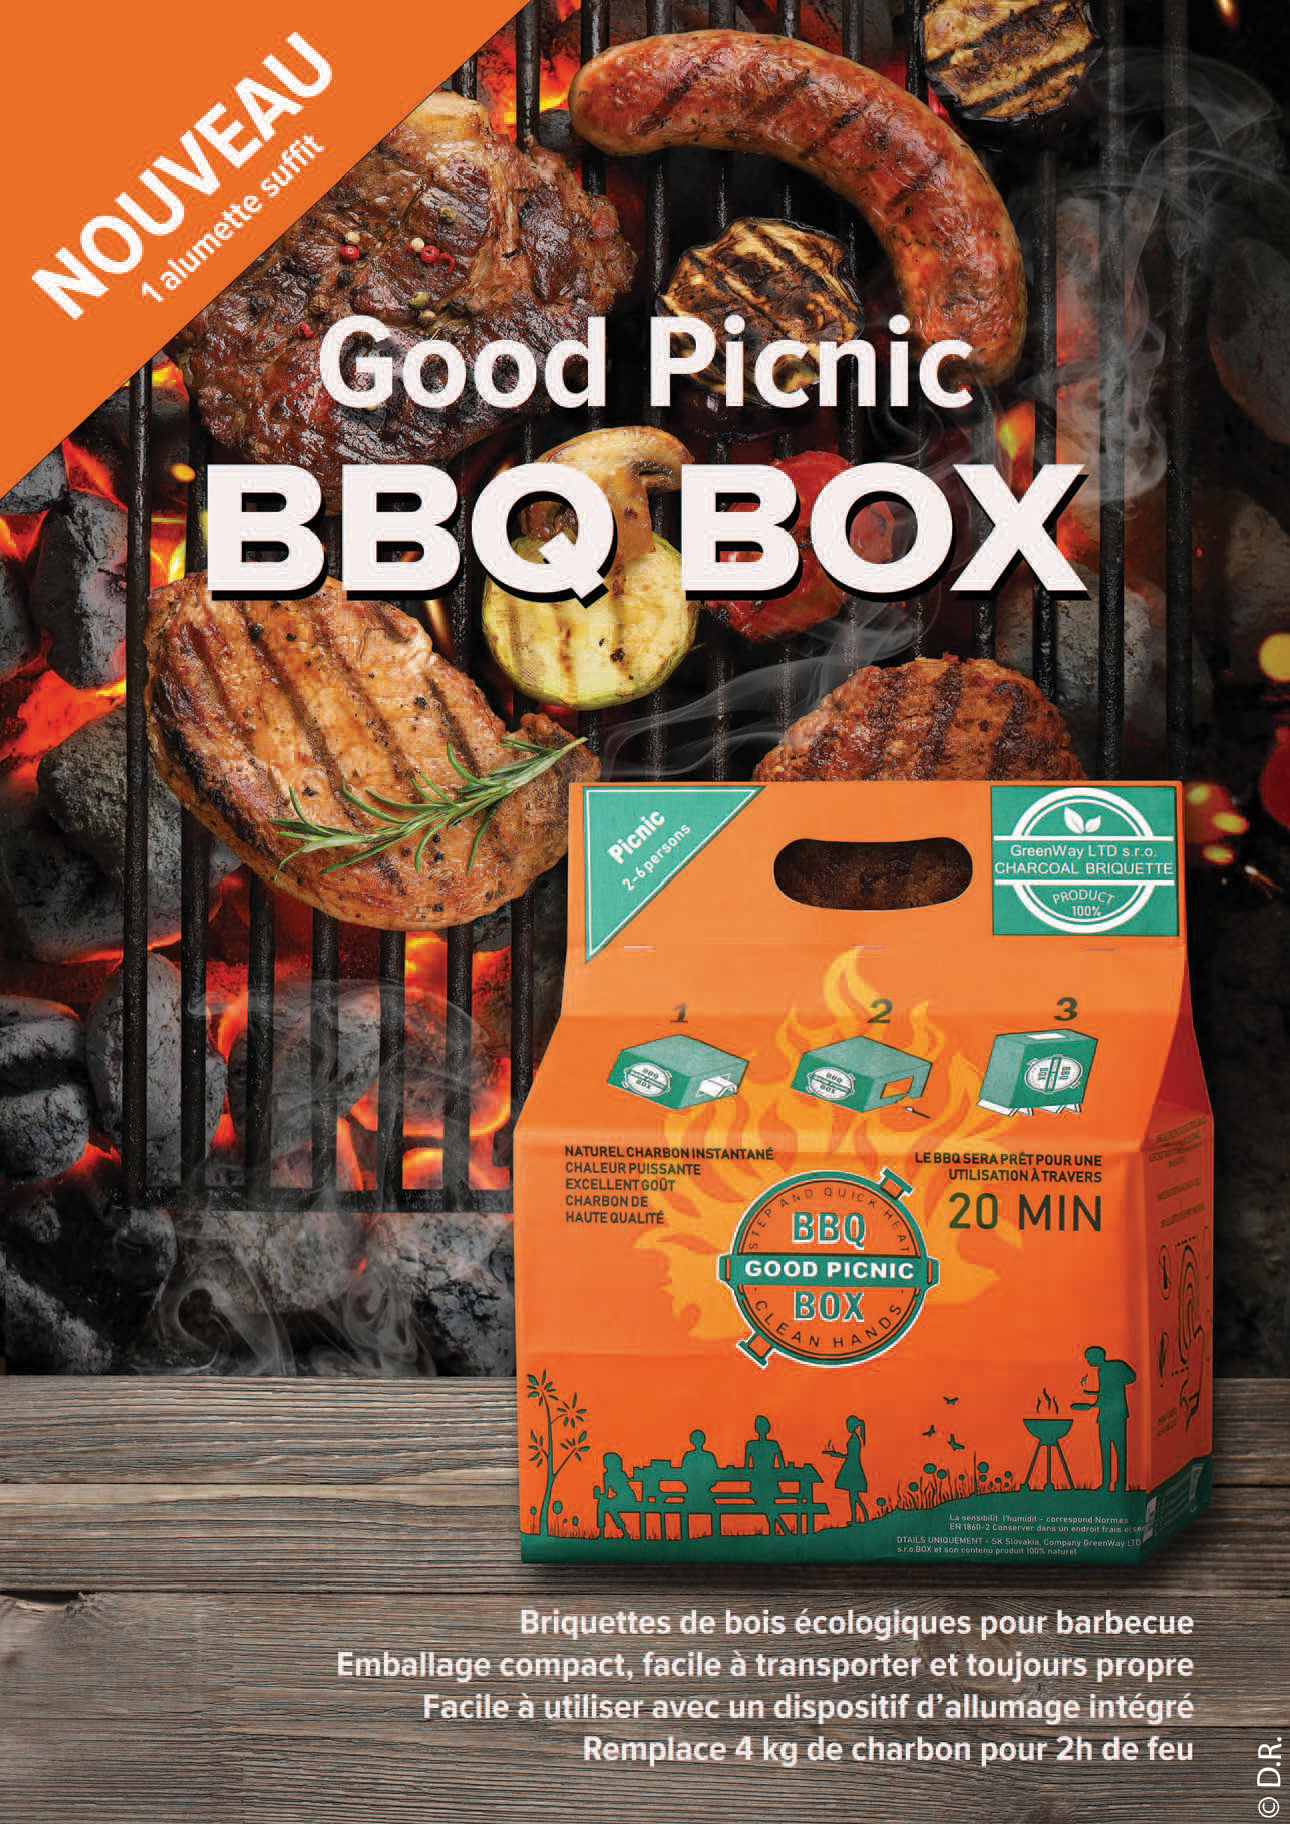 La BBQ Box “Good Picnic” va révolutionner votre manière d’allumer un barbecue !